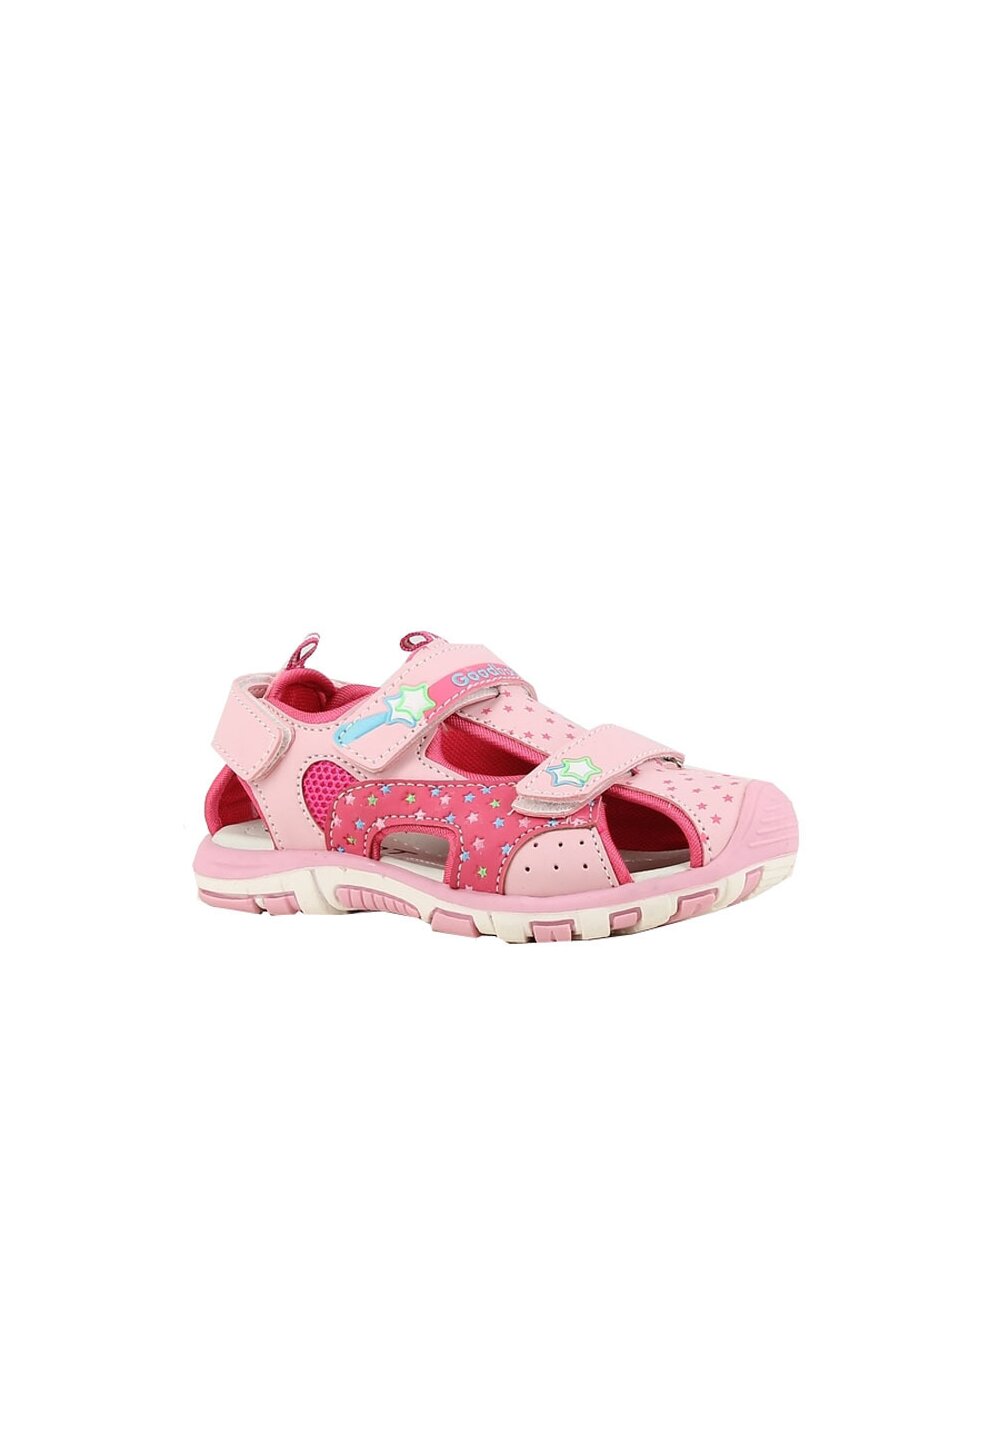 Sandale fete, cu scai din piele ecologica, roz deschis cu stele